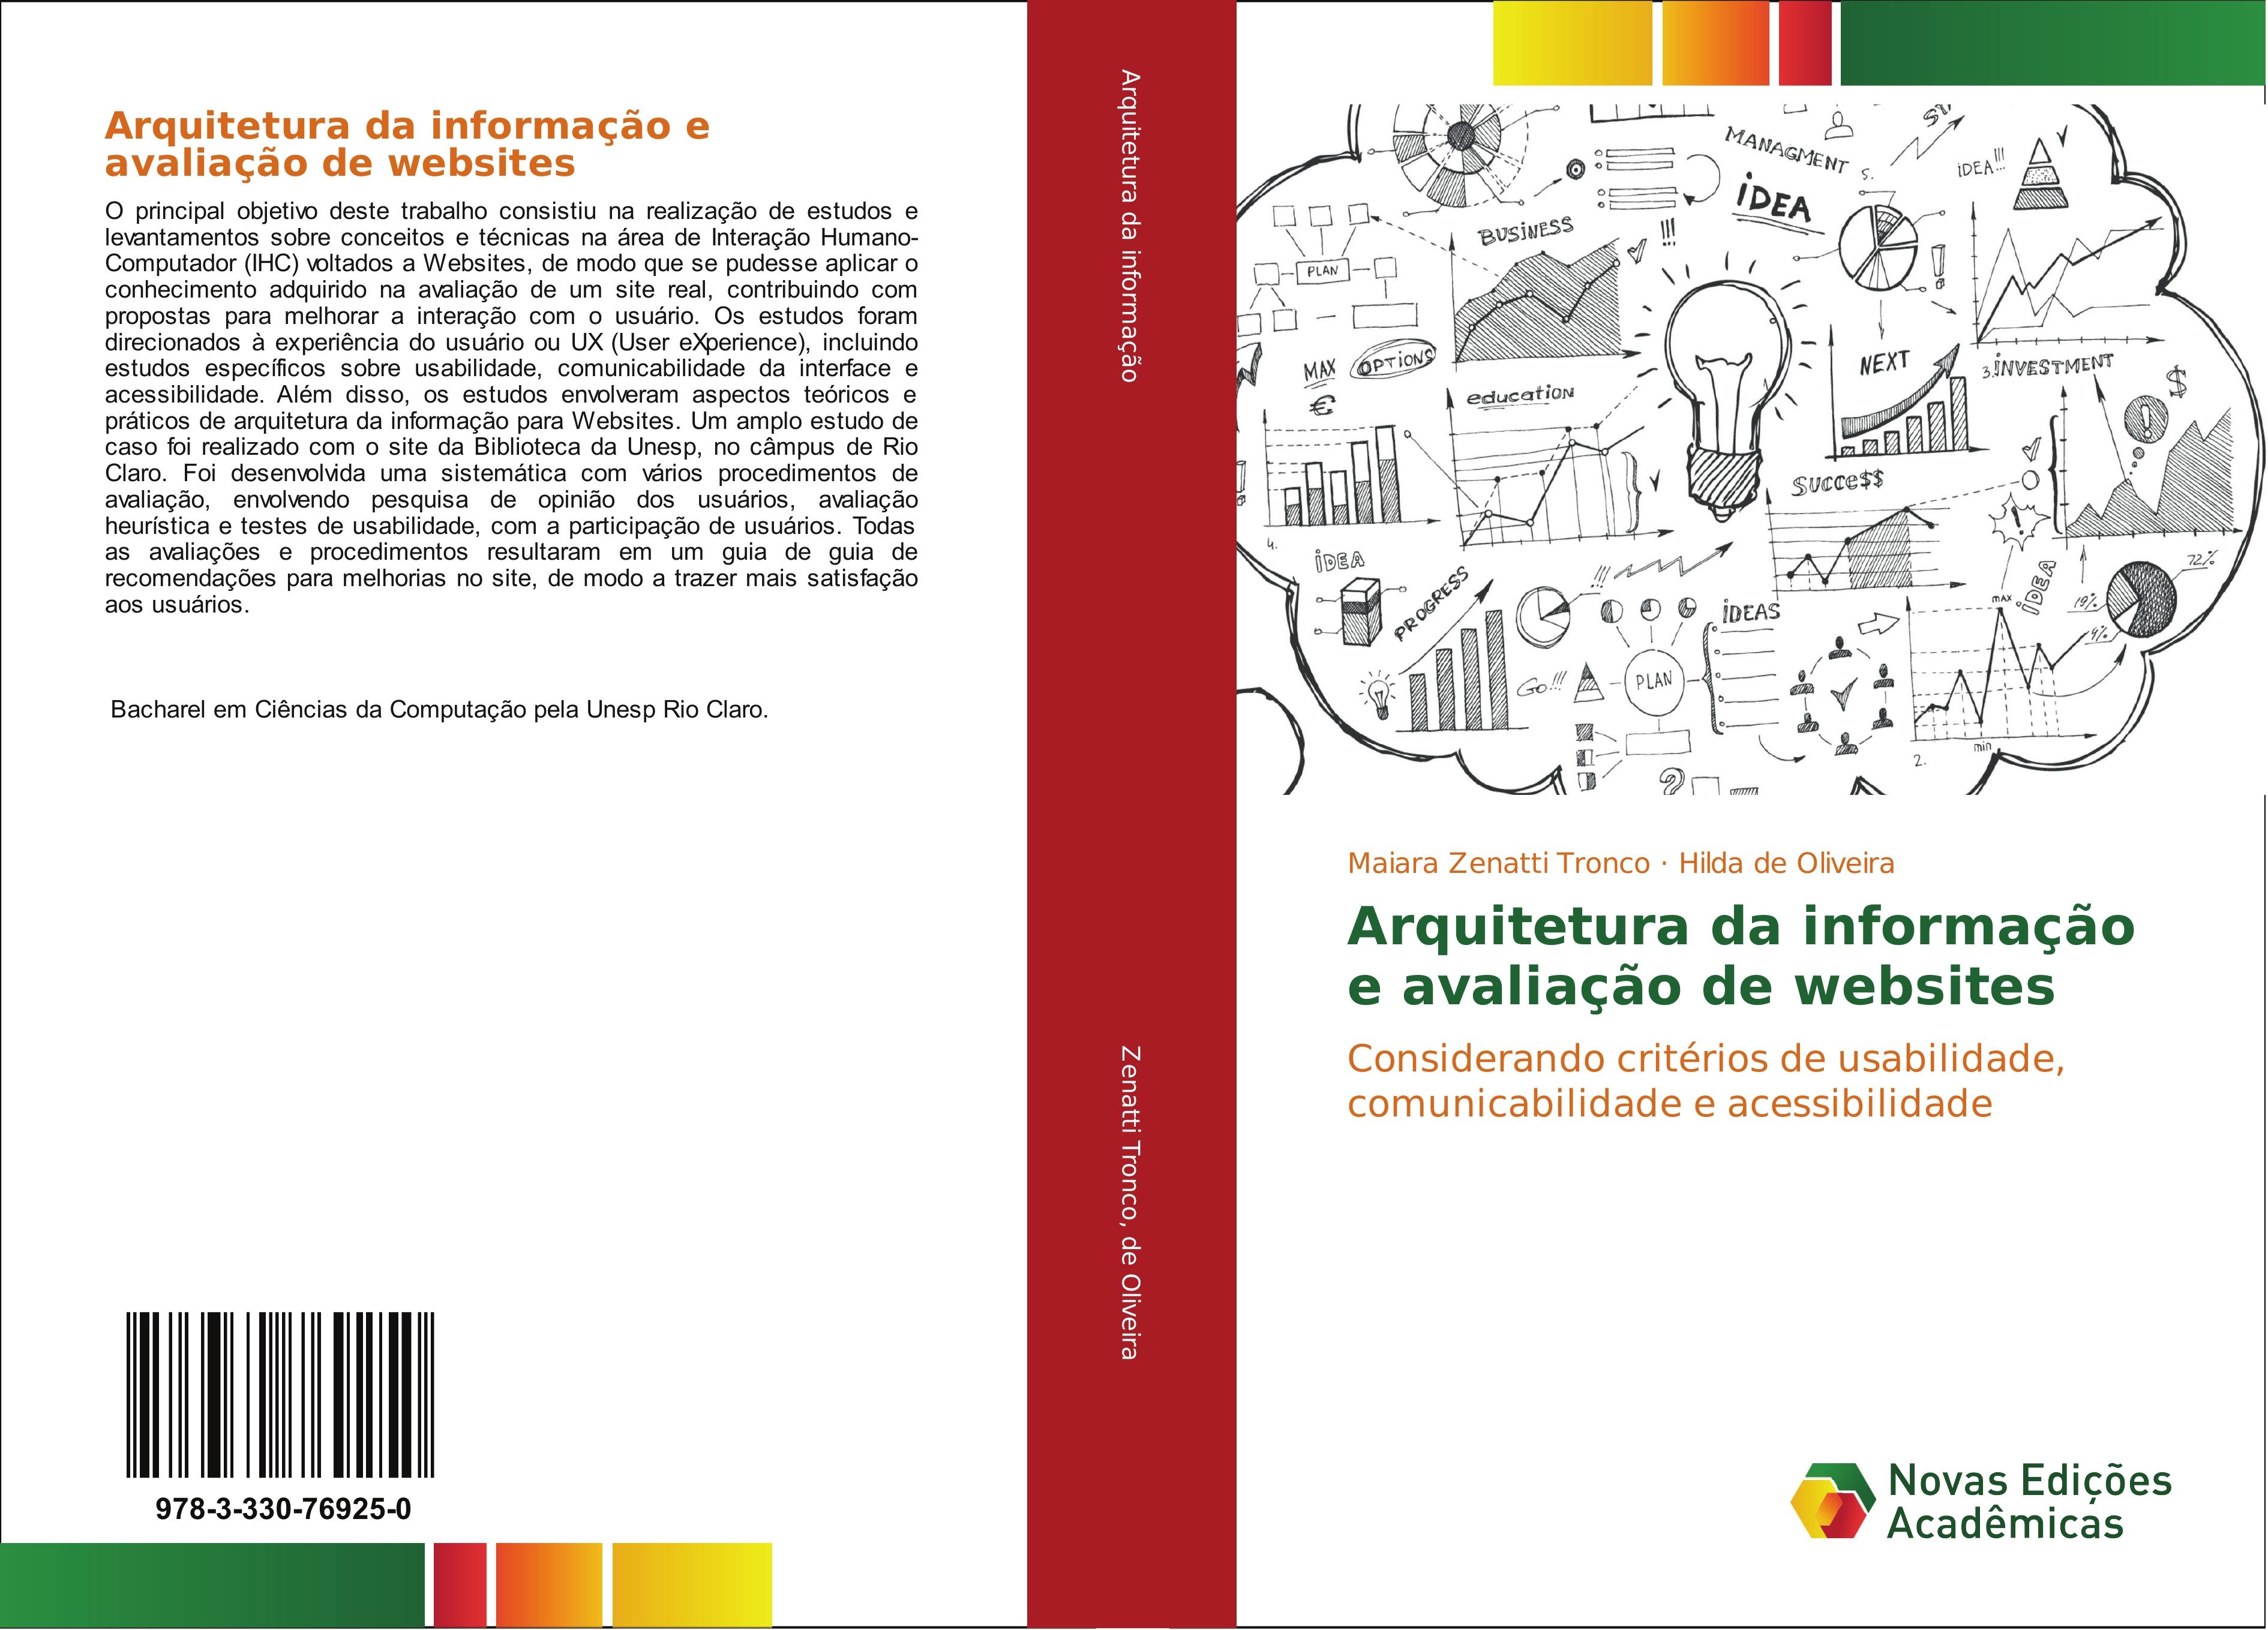 Arquitetura da informação e avaliação de websites - Maiara Zenatti Tronco Hilda de Oliveira